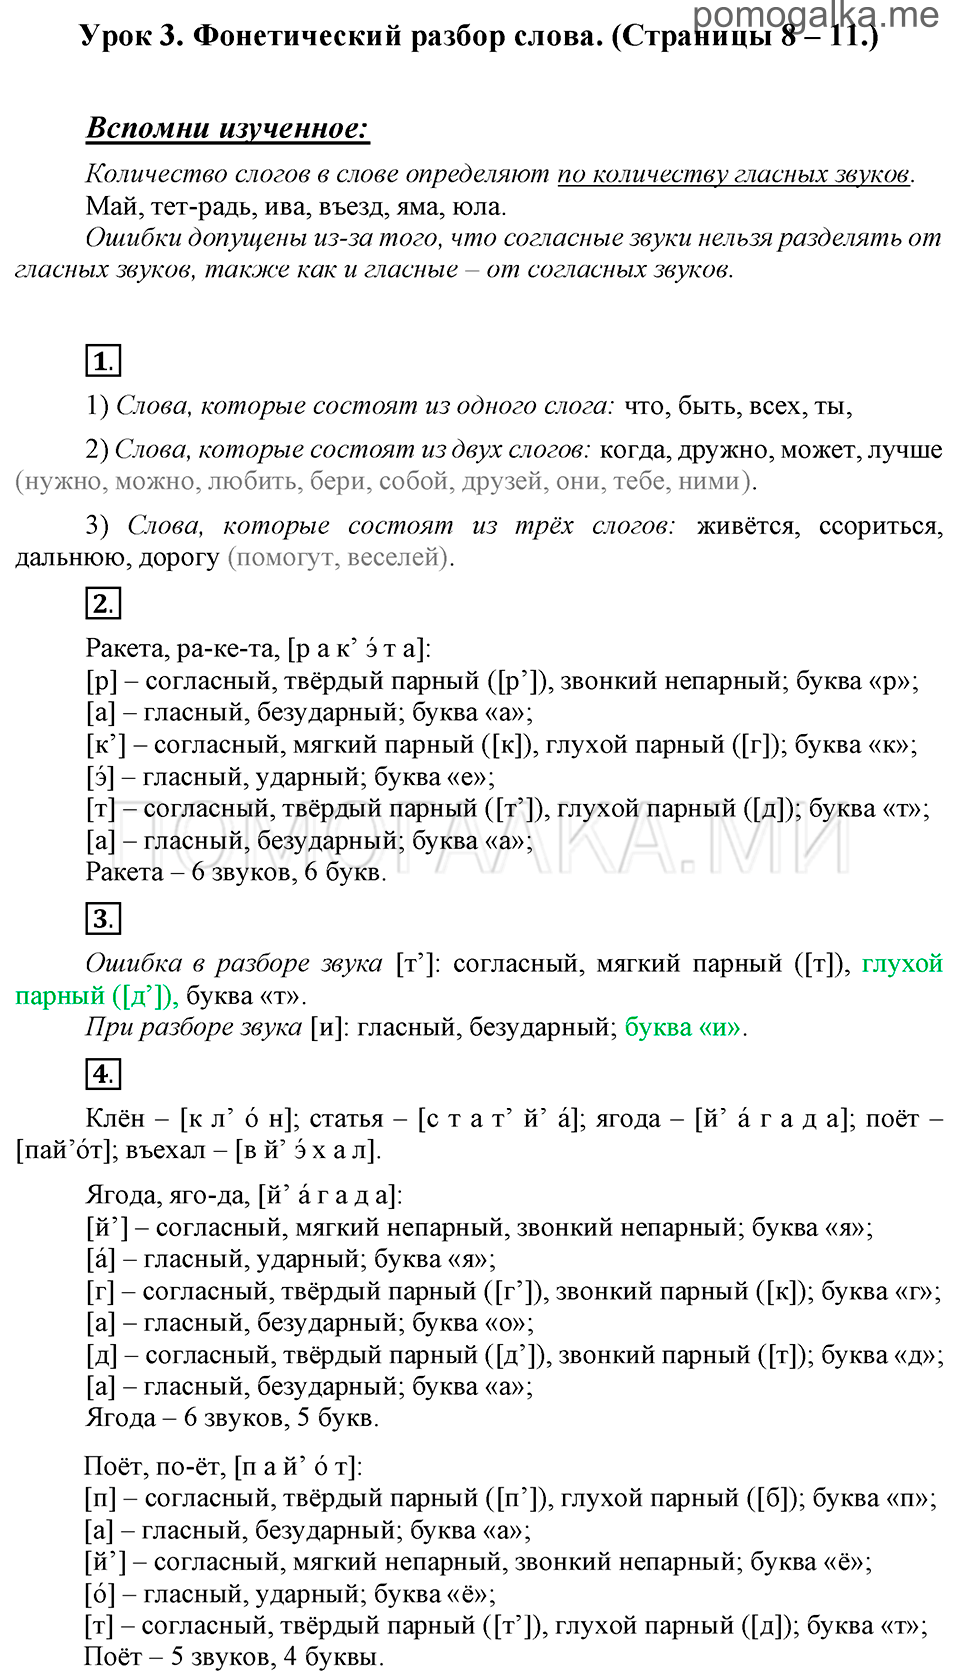 часть 1 страницы 8-11 урок 3 русский язык 3 класс Иванов, Евдокимова, Кузнецова